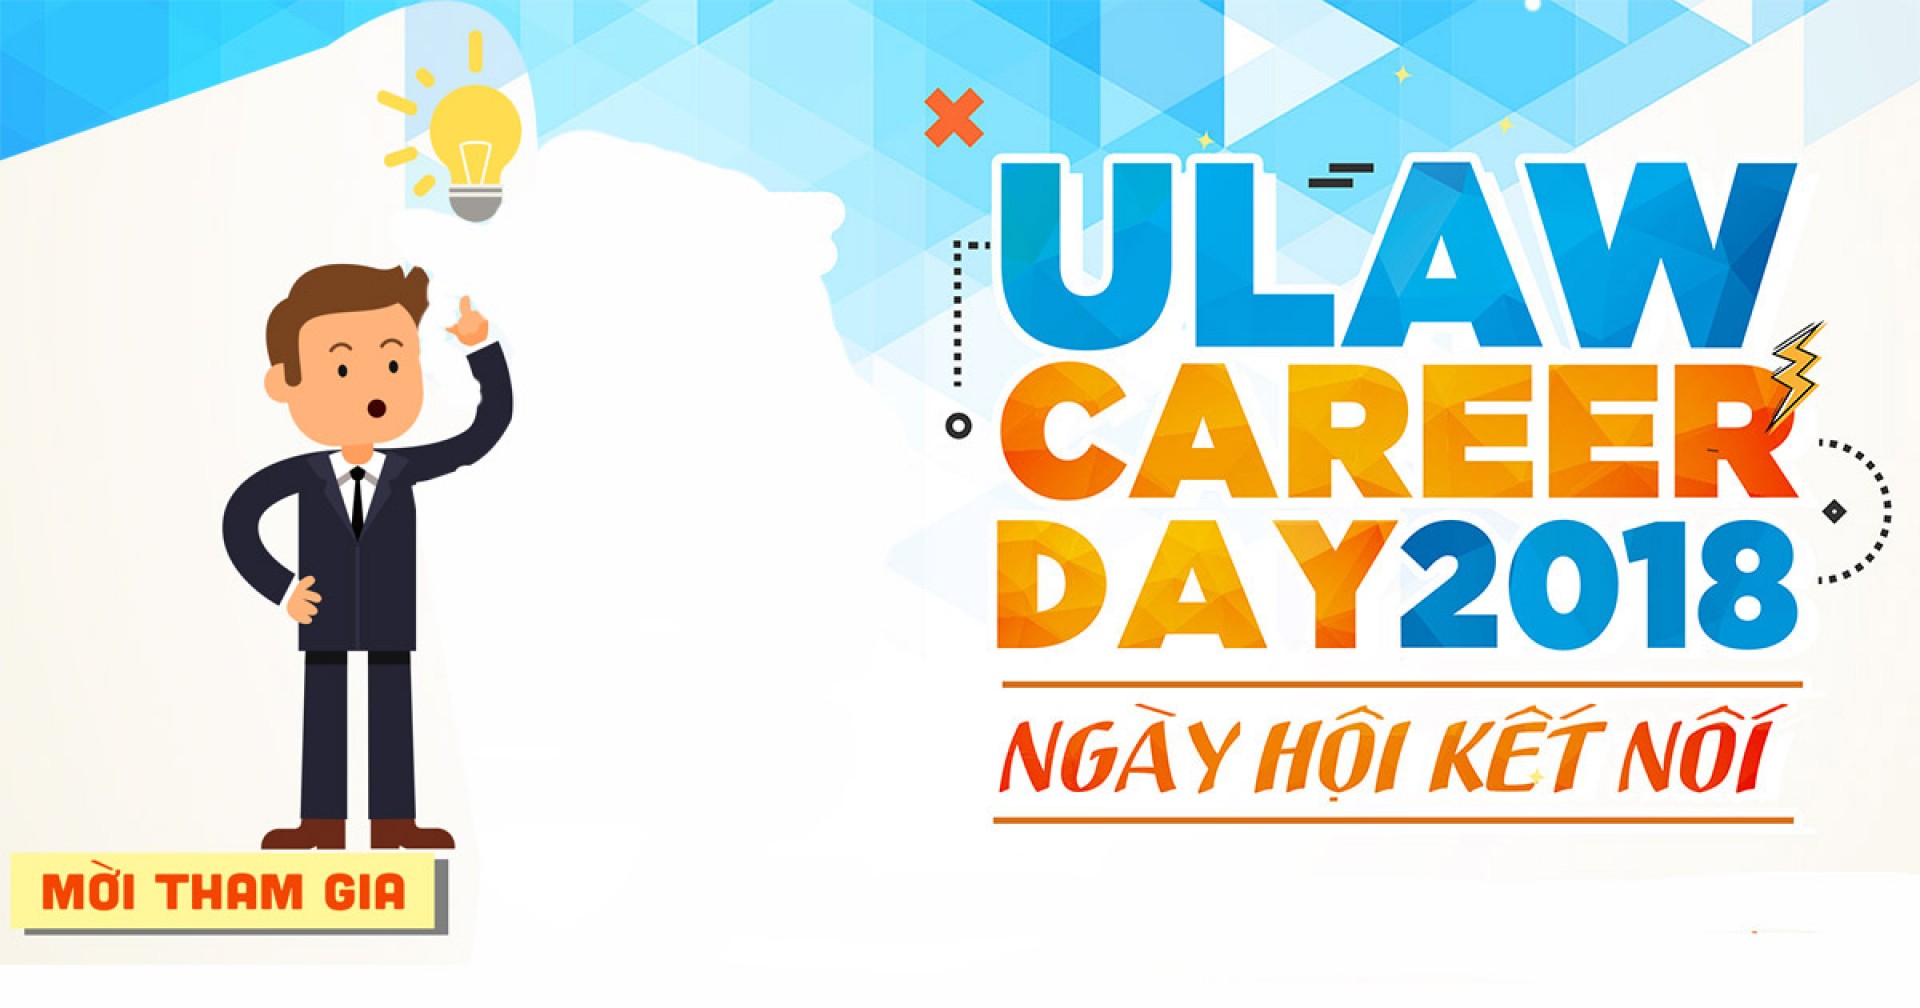 Ngày hội kết nối “Ulaw Career Day 2018” chính thức khai mạc 